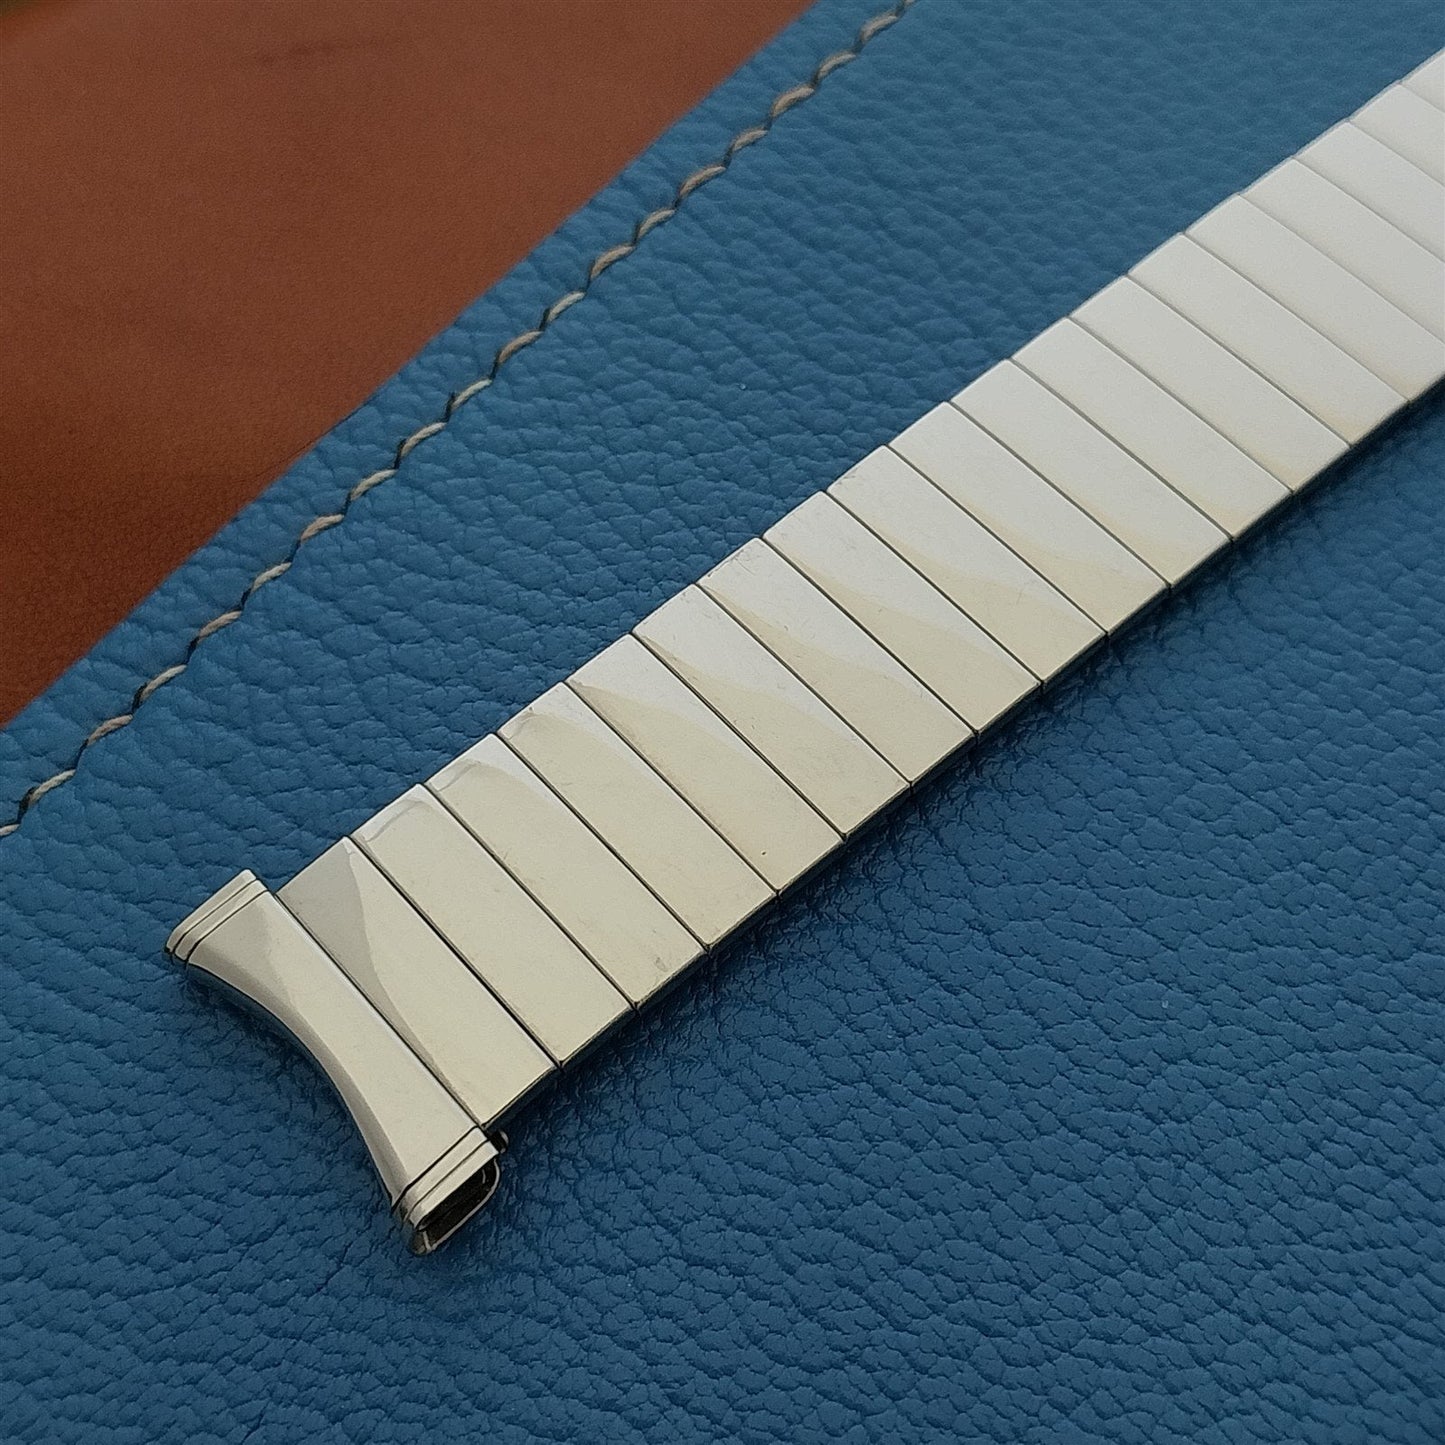 19mm 18mm UniFlex Stainless Steel Slim Expansion Unused 1960s Vintage Watch Band